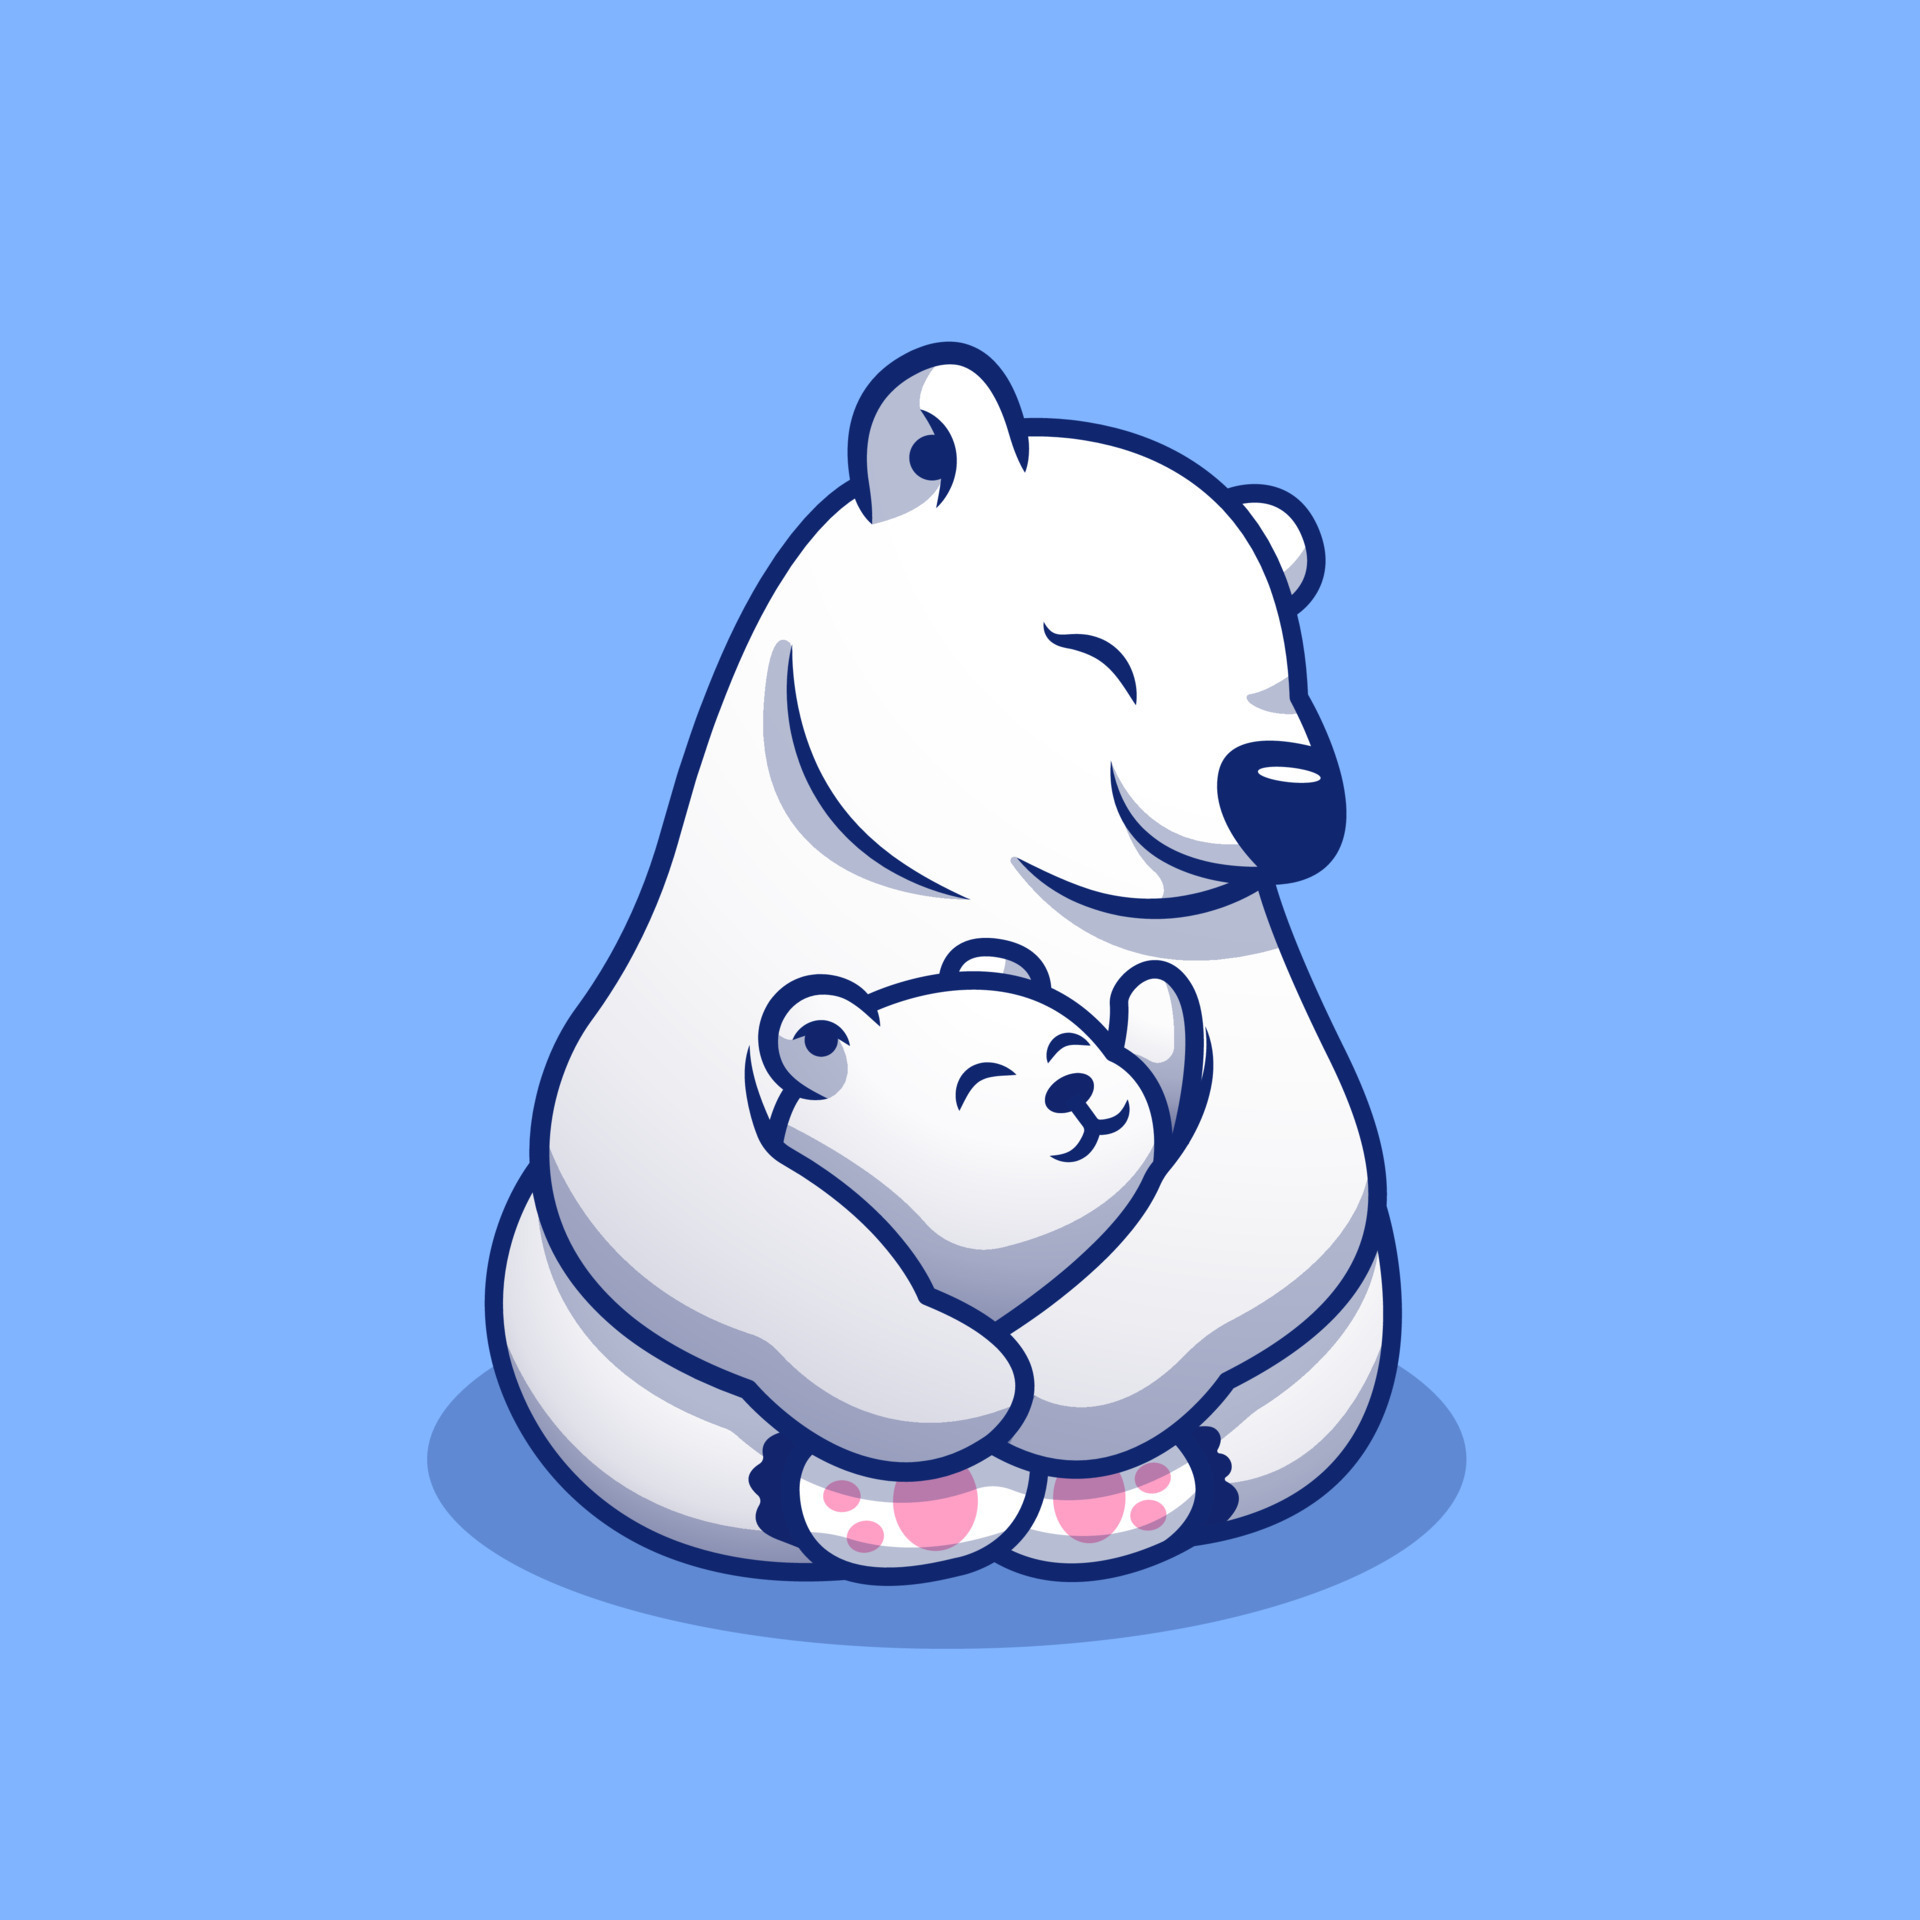 Mãe panda fofa com um filhote ilustração vetorial de um desenho animado, Vetor Premium